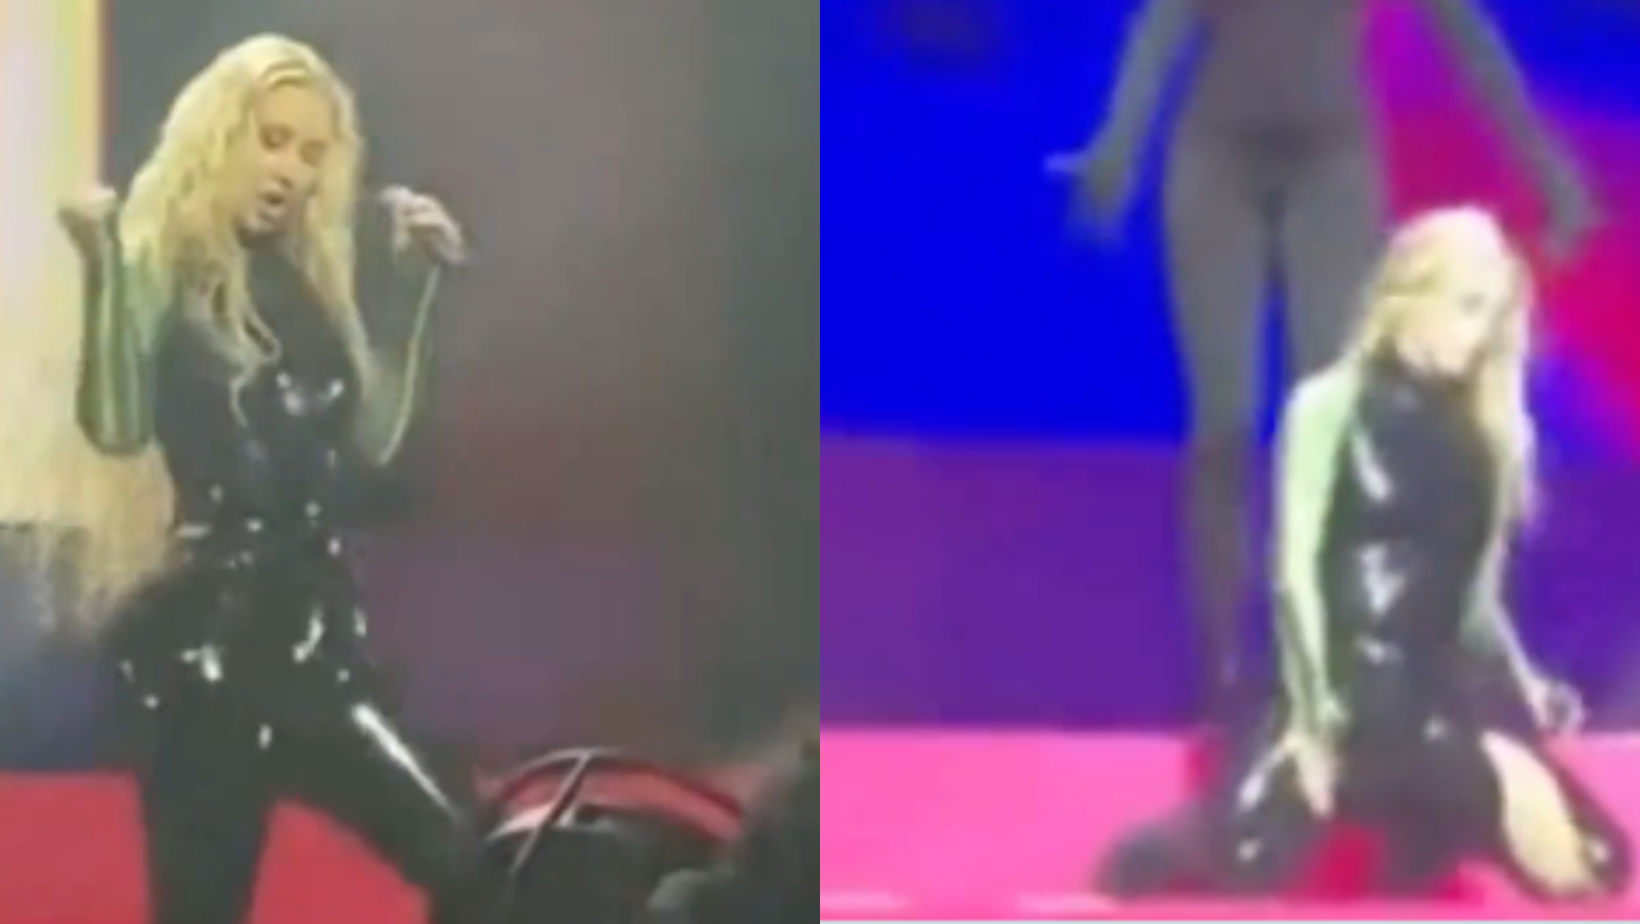 Autoridades cancelan el show de Iggy Azalea tras romperse su pantalón en pleno concierto en Arabia